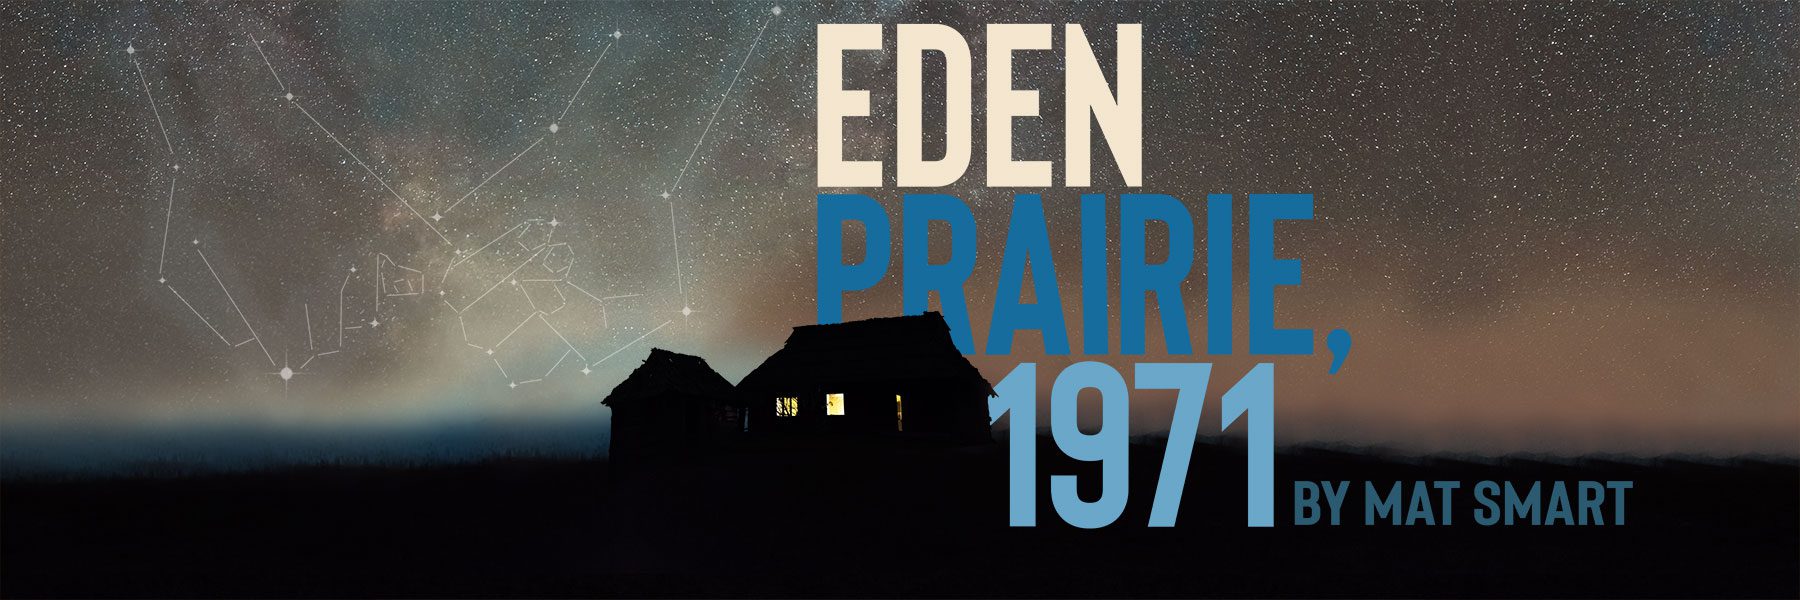 Eden Prairie, 1971 by Mat Smart